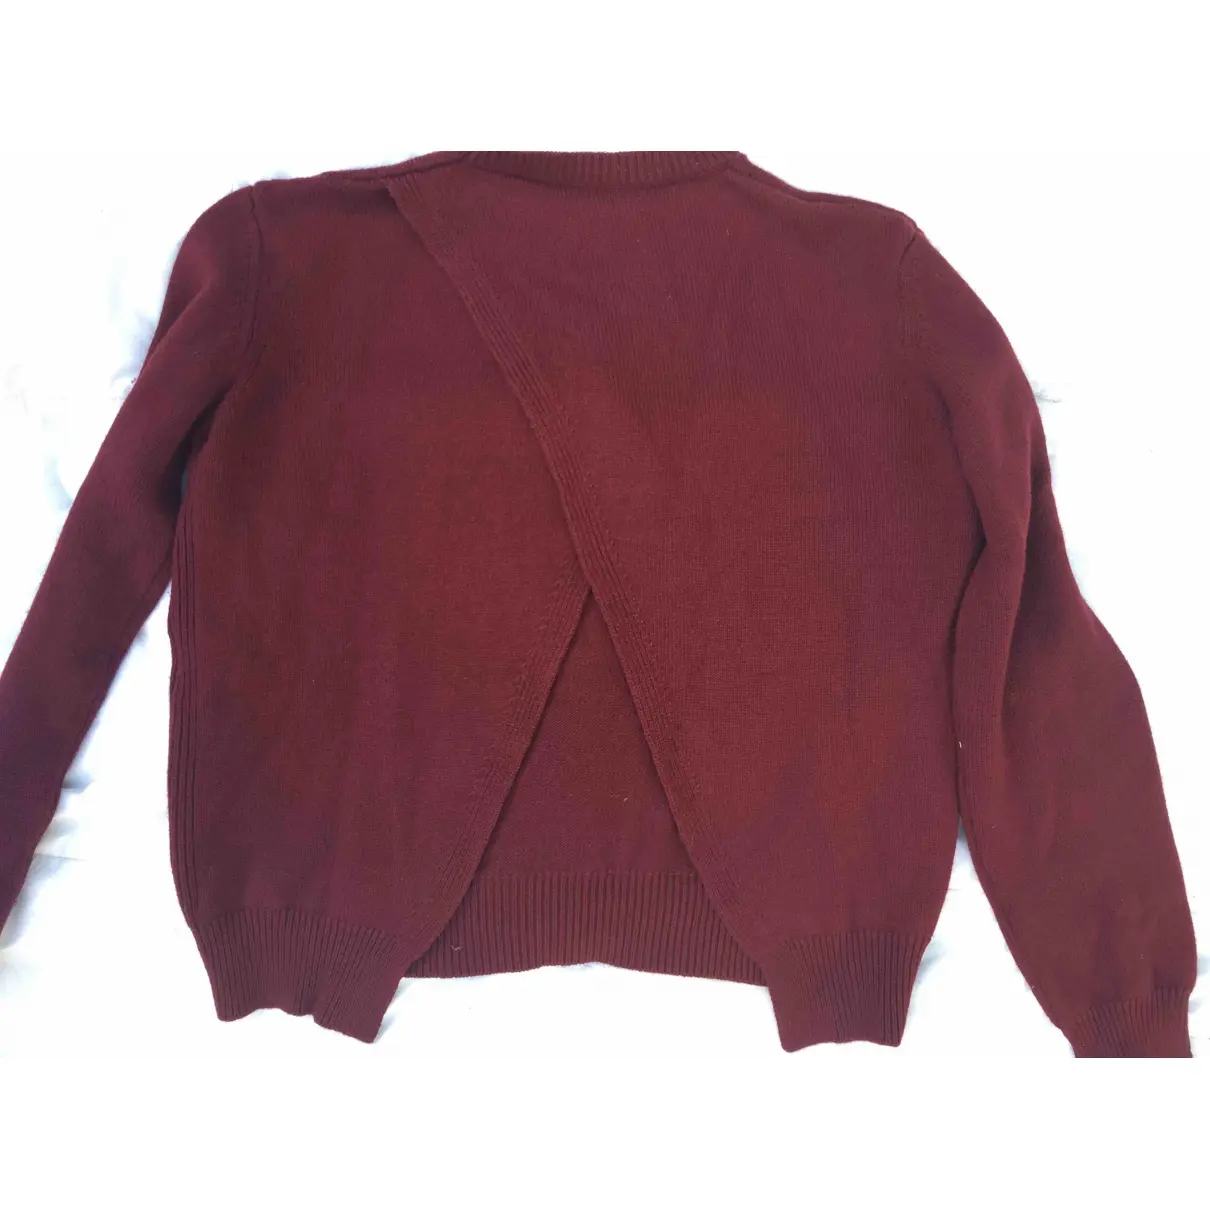 Buy Celine Cashmere sweatshirt online